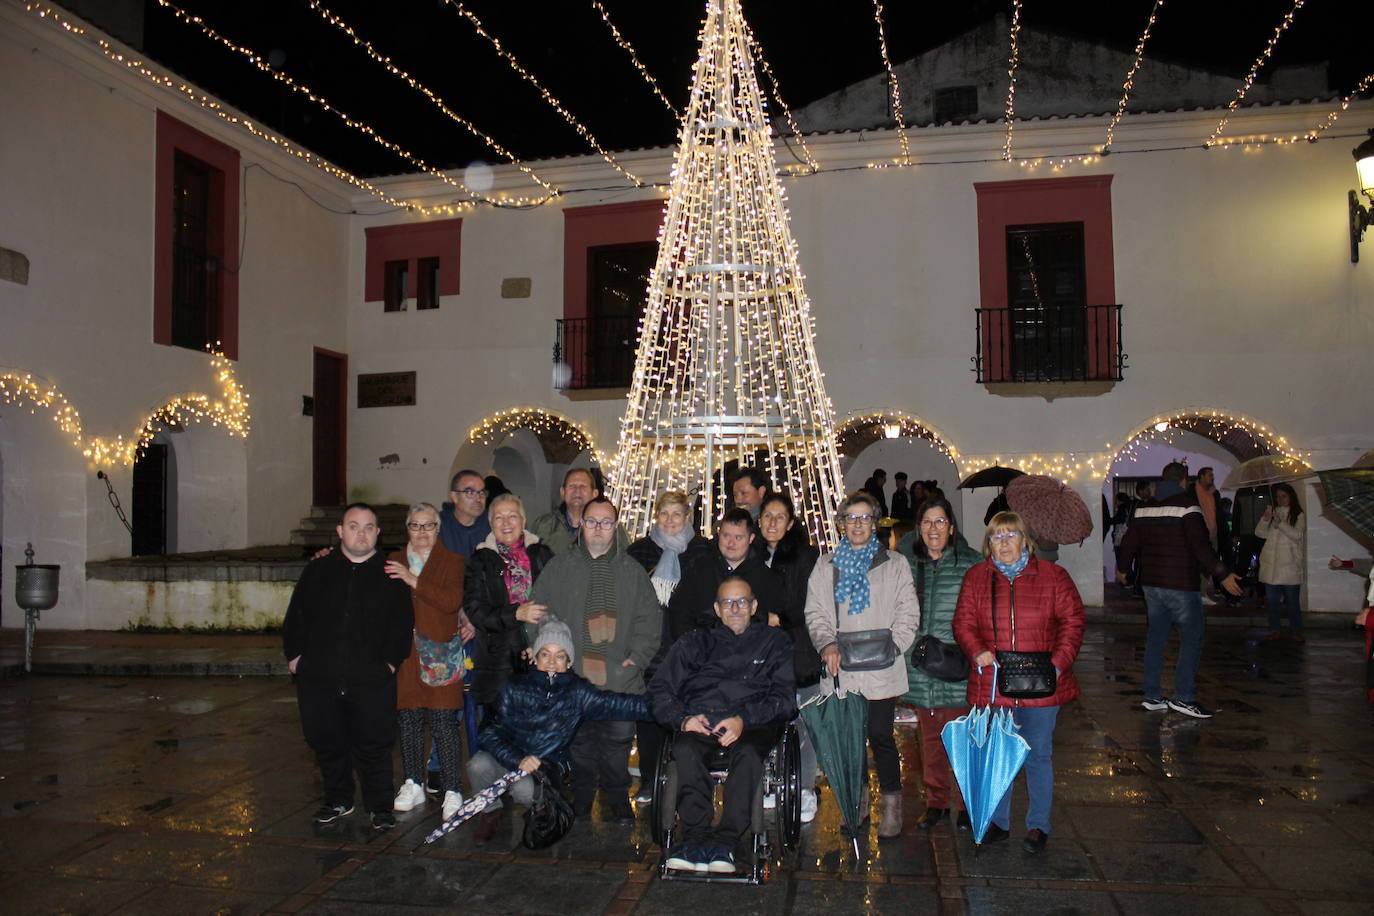 Imagen principal - Casar de Cáceres estrena la Navidad con su encendido de luces